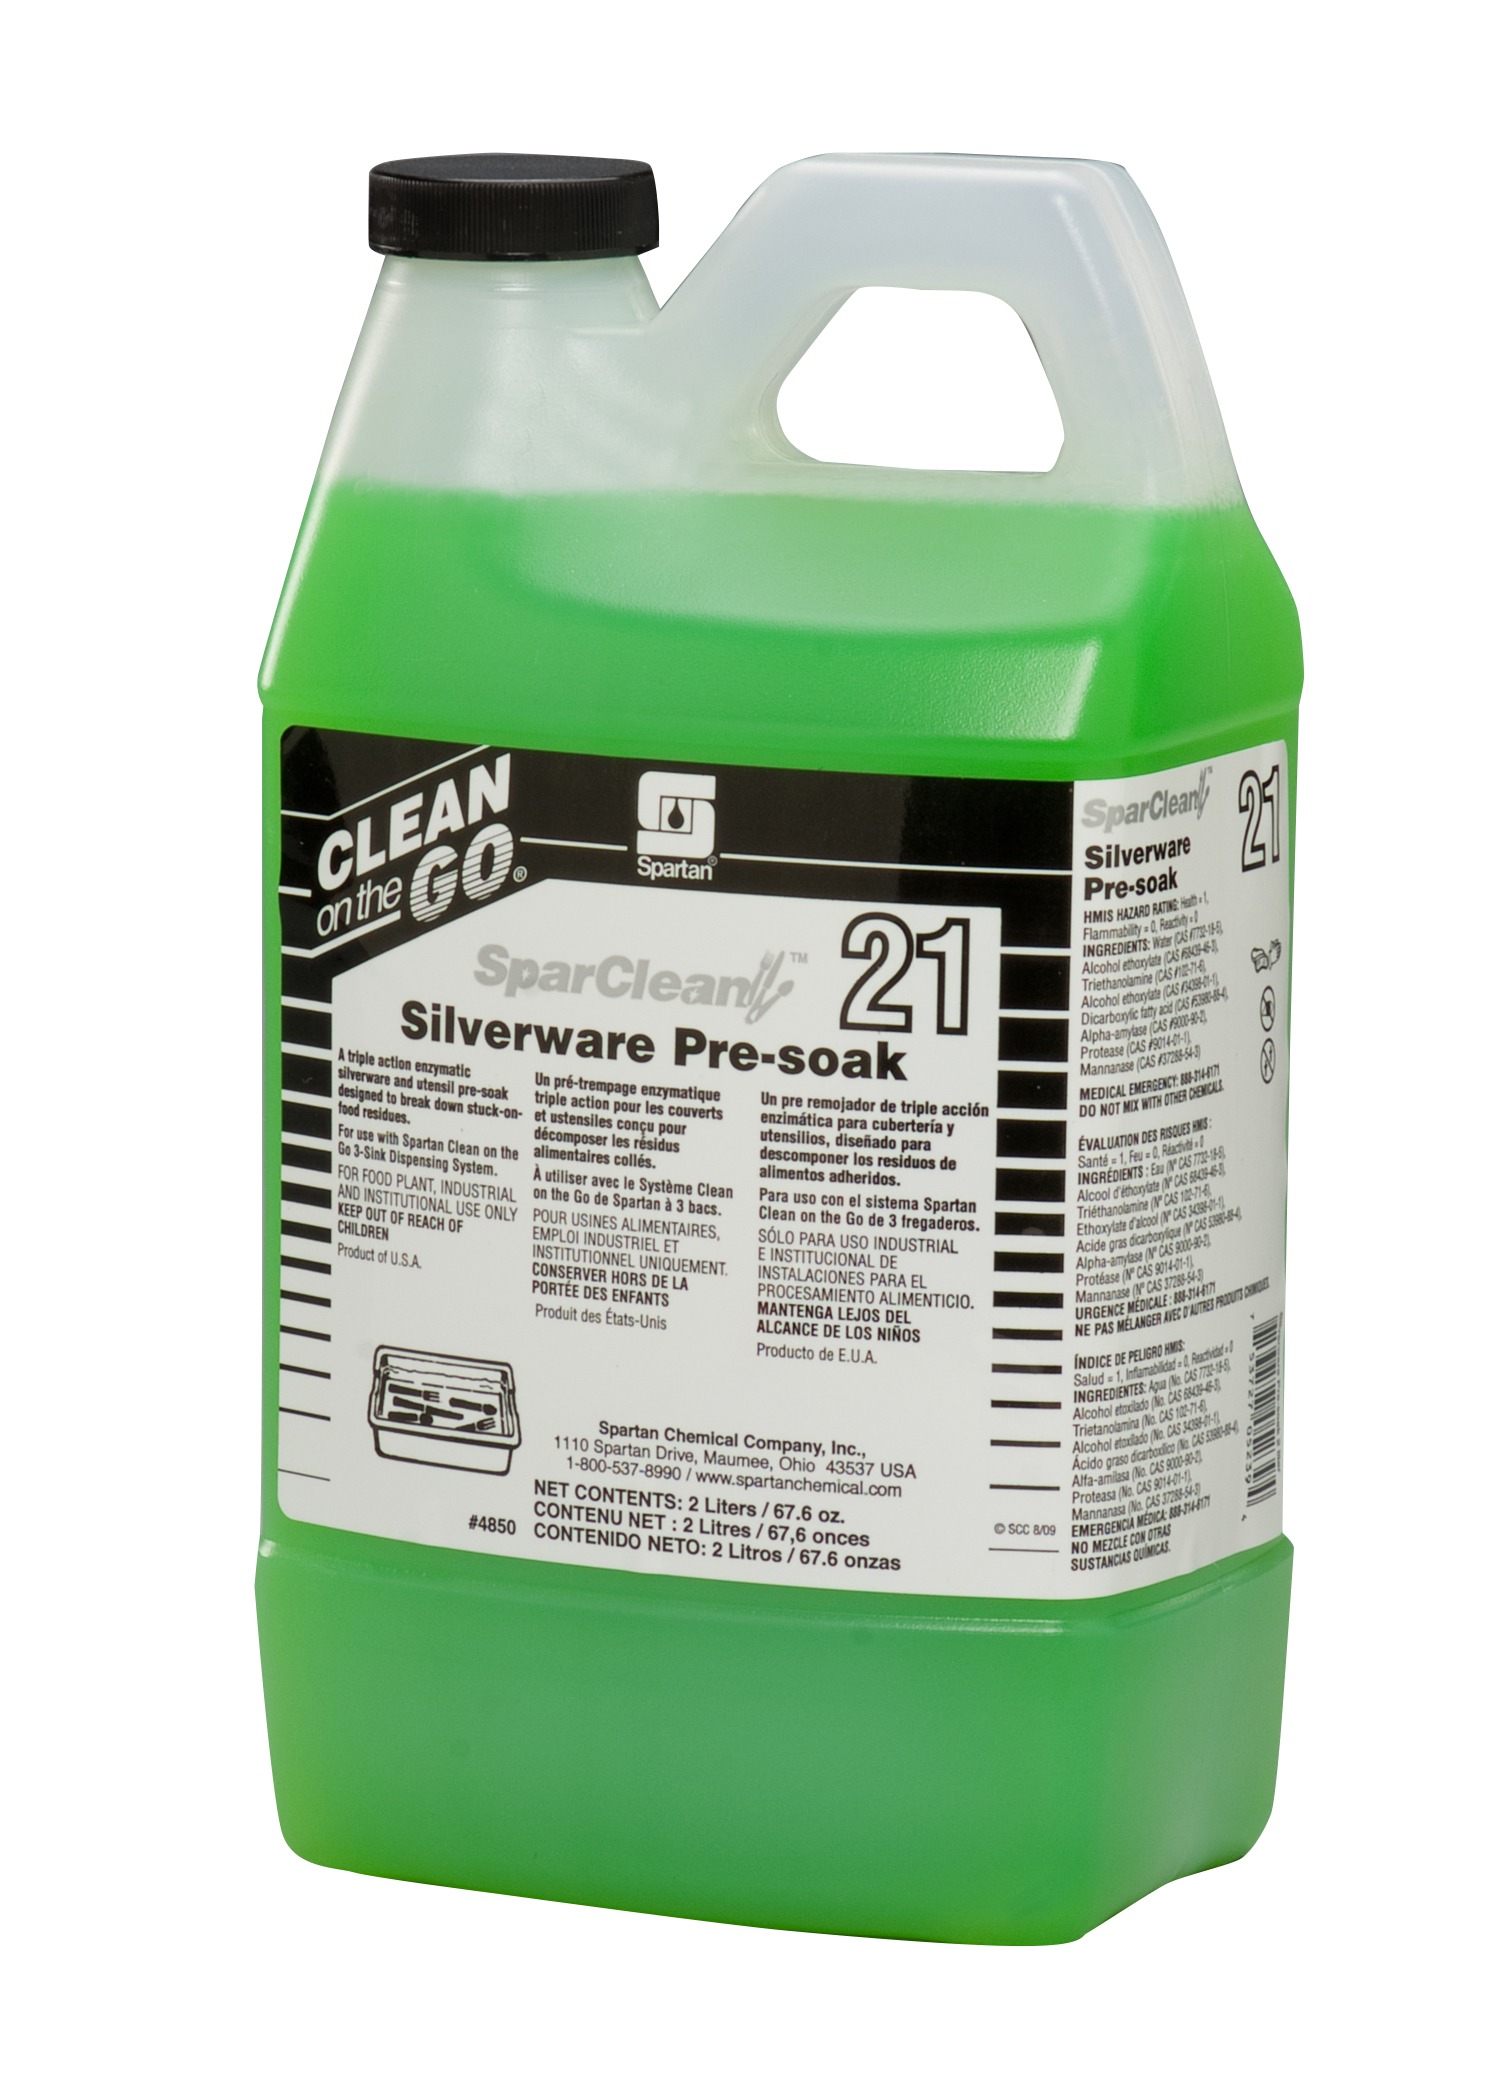 SparClean® Silverware Pre-soak 21 2 liter (4 per case)